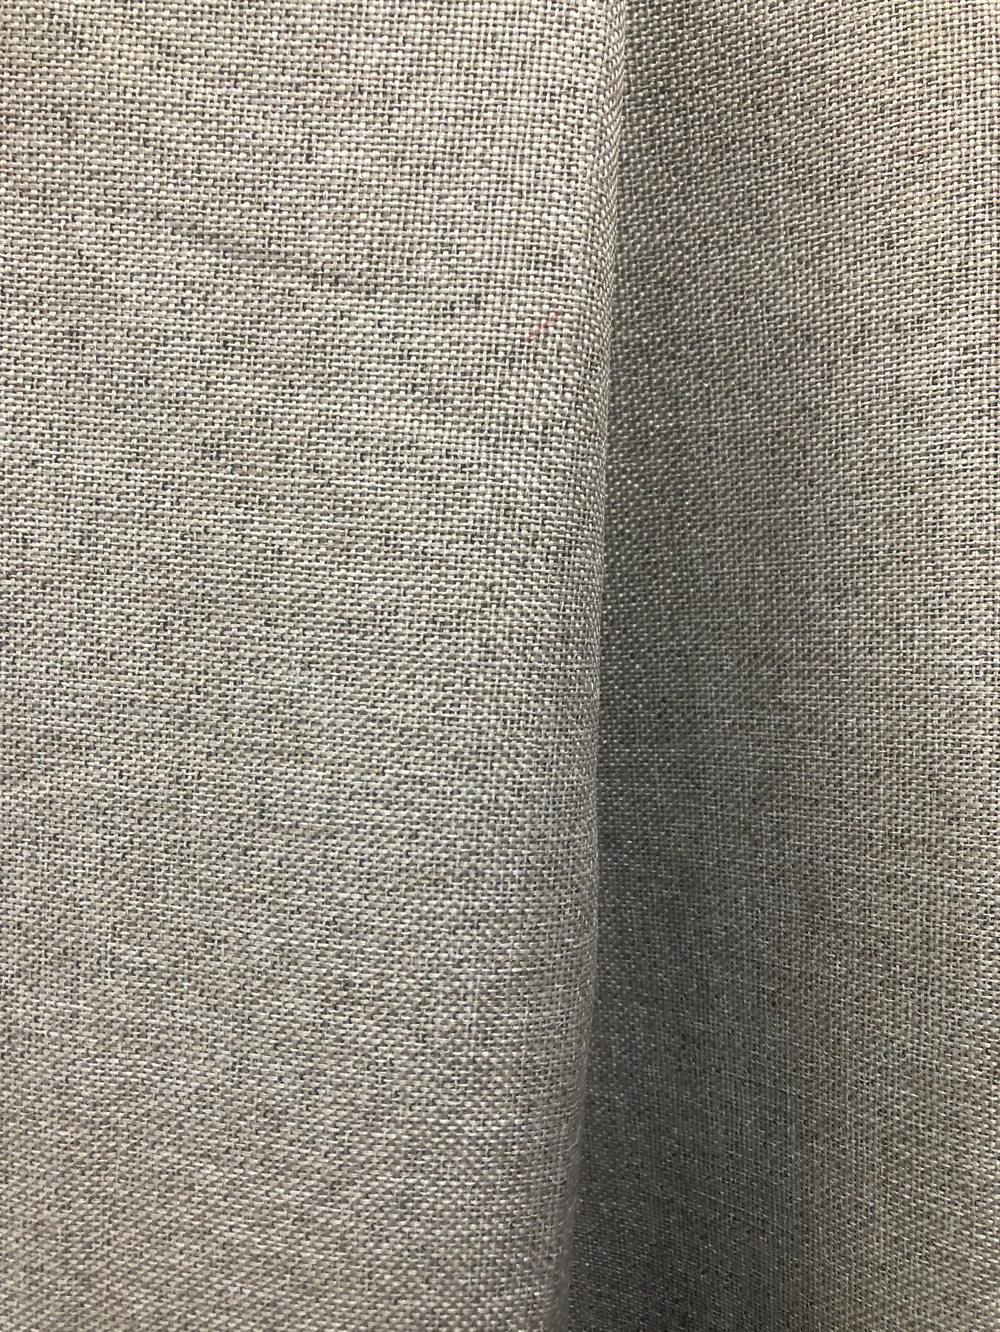 Ткань портьерная Блэкаут-лен, цвет натуральный лен, артикул 327618